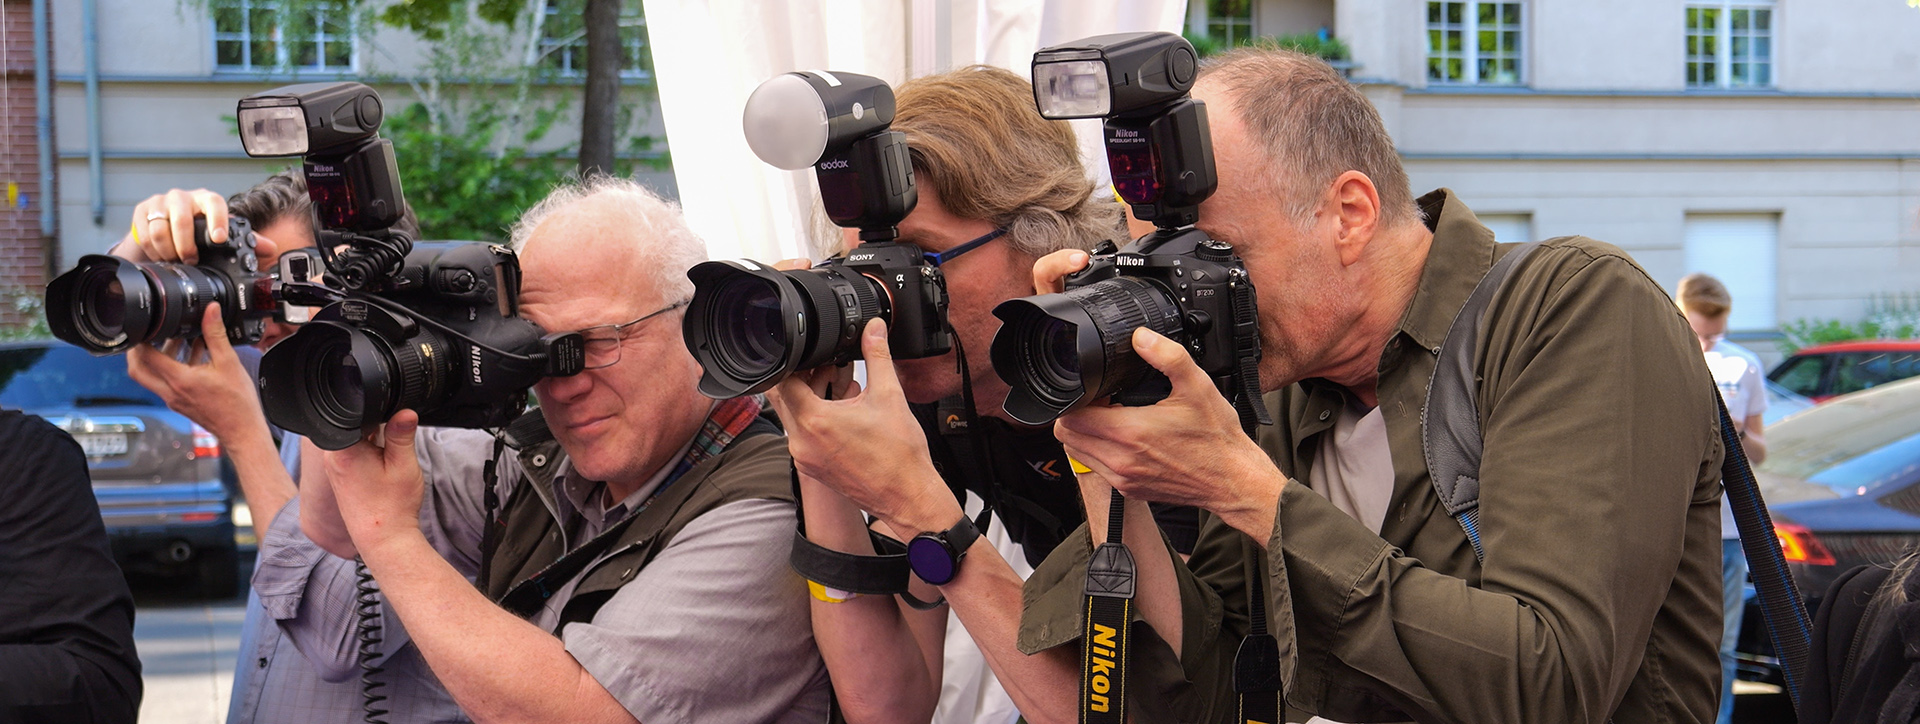 Fotografen mit Kamera auf Motivsuche bei einer Veranstaltung